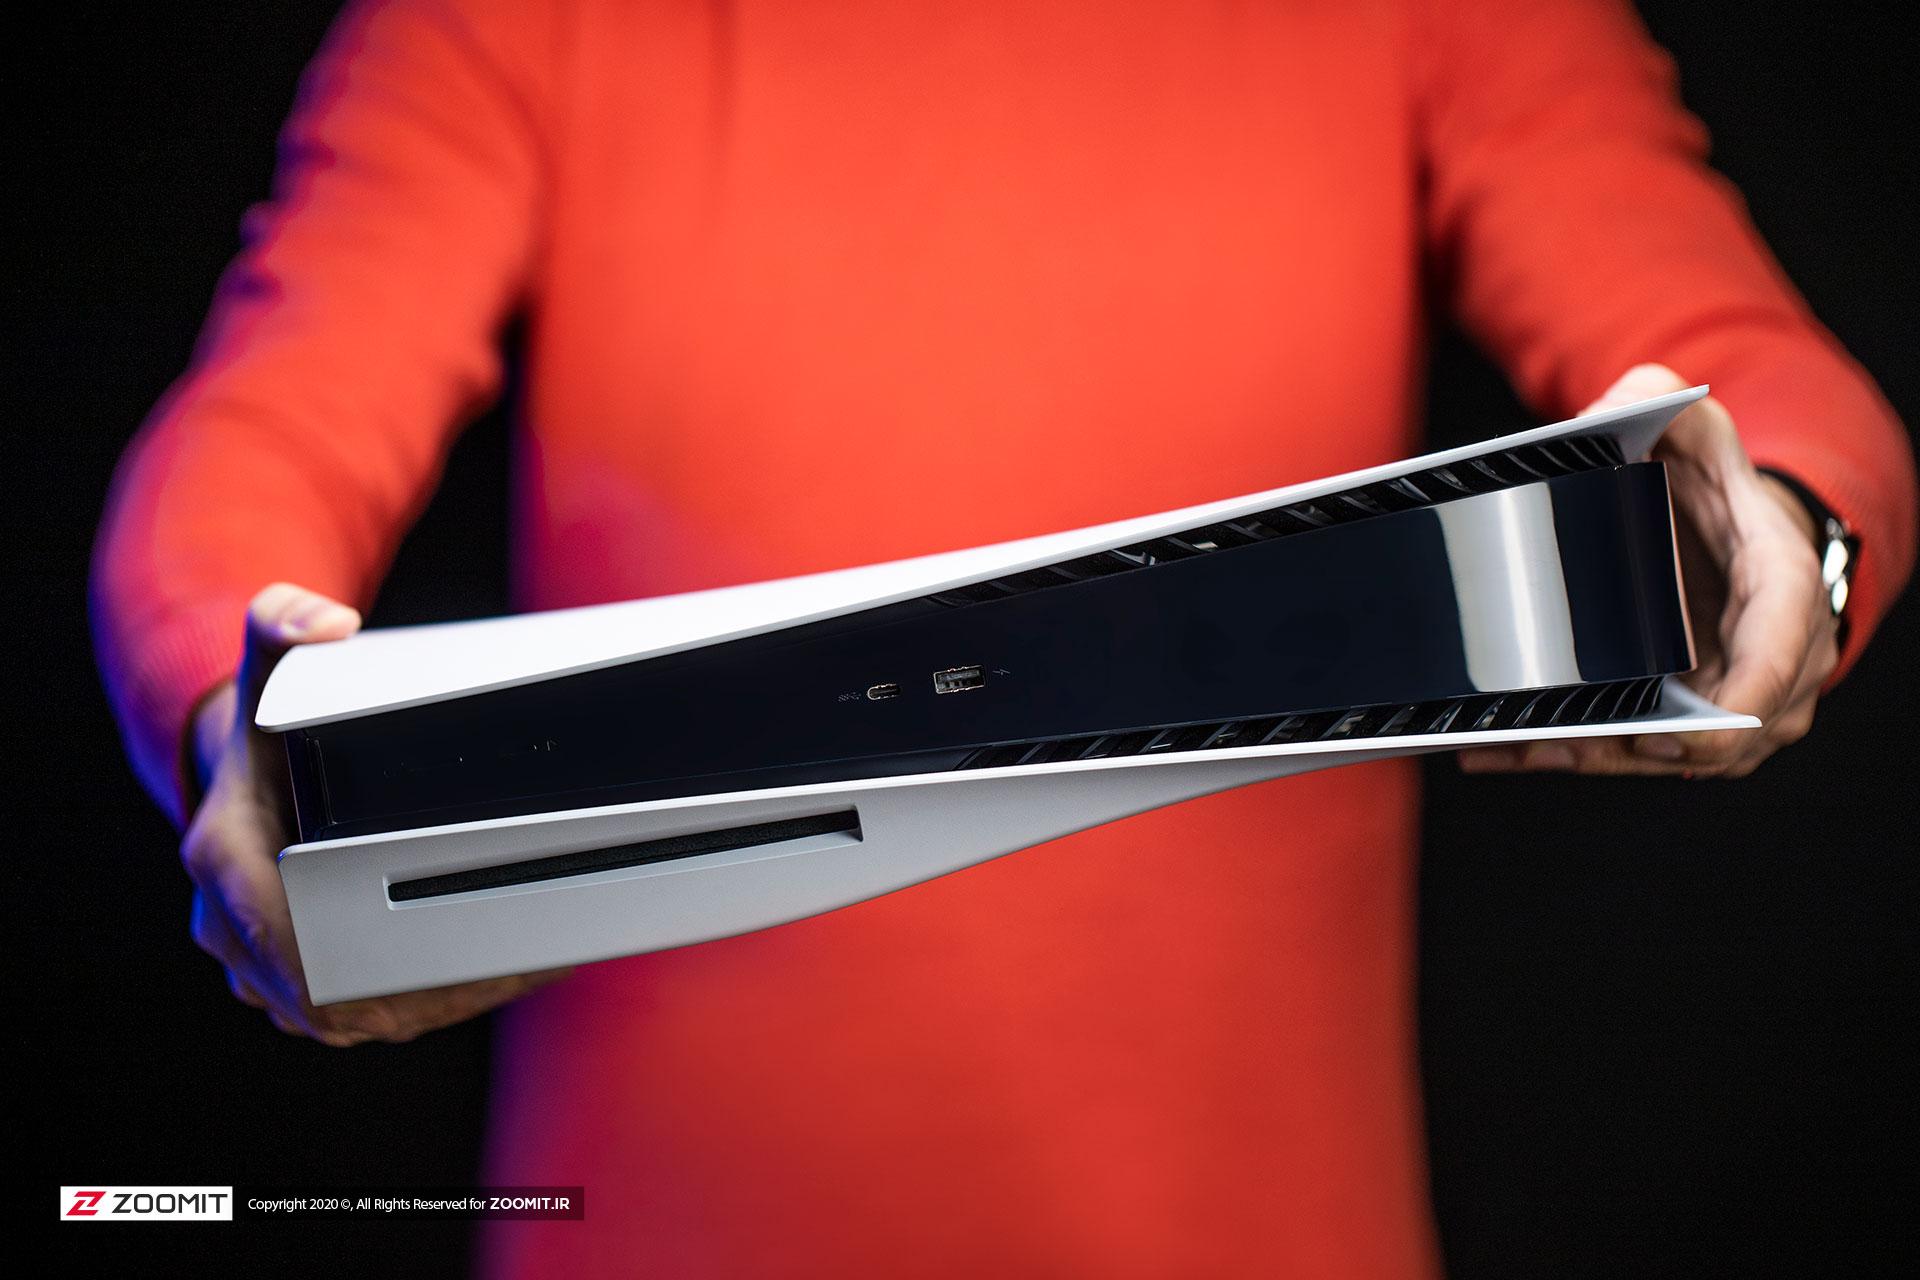 مرجع متخصصين ايران ابعاد PS5 پلي استيشن 5 سوني در دست